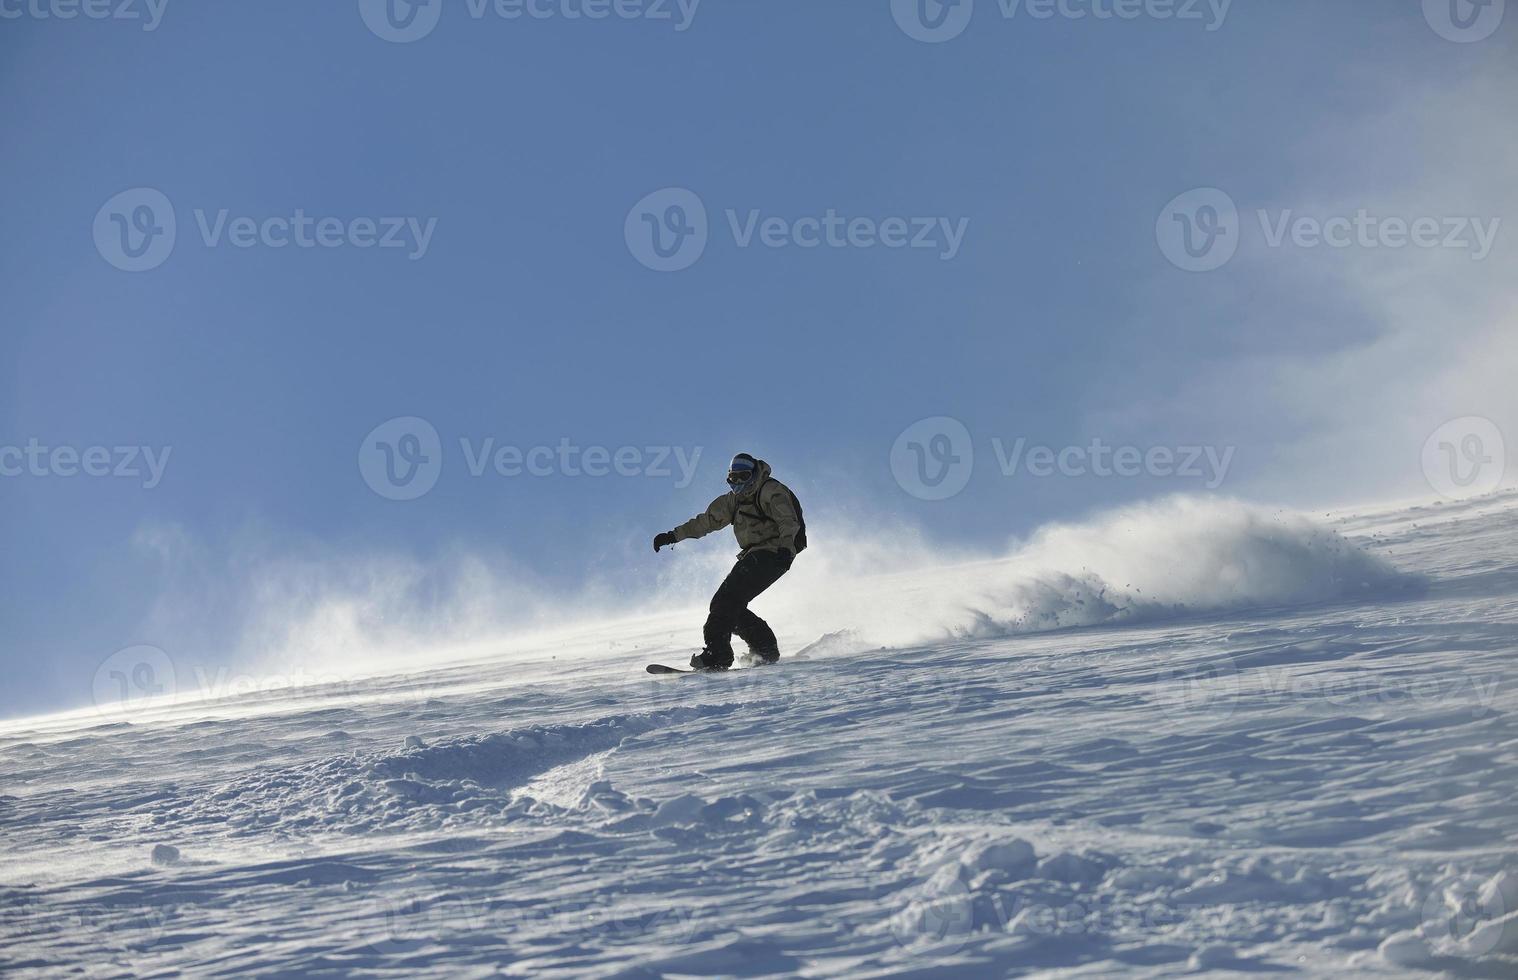 saut et ride de snowboarder freestyle photo